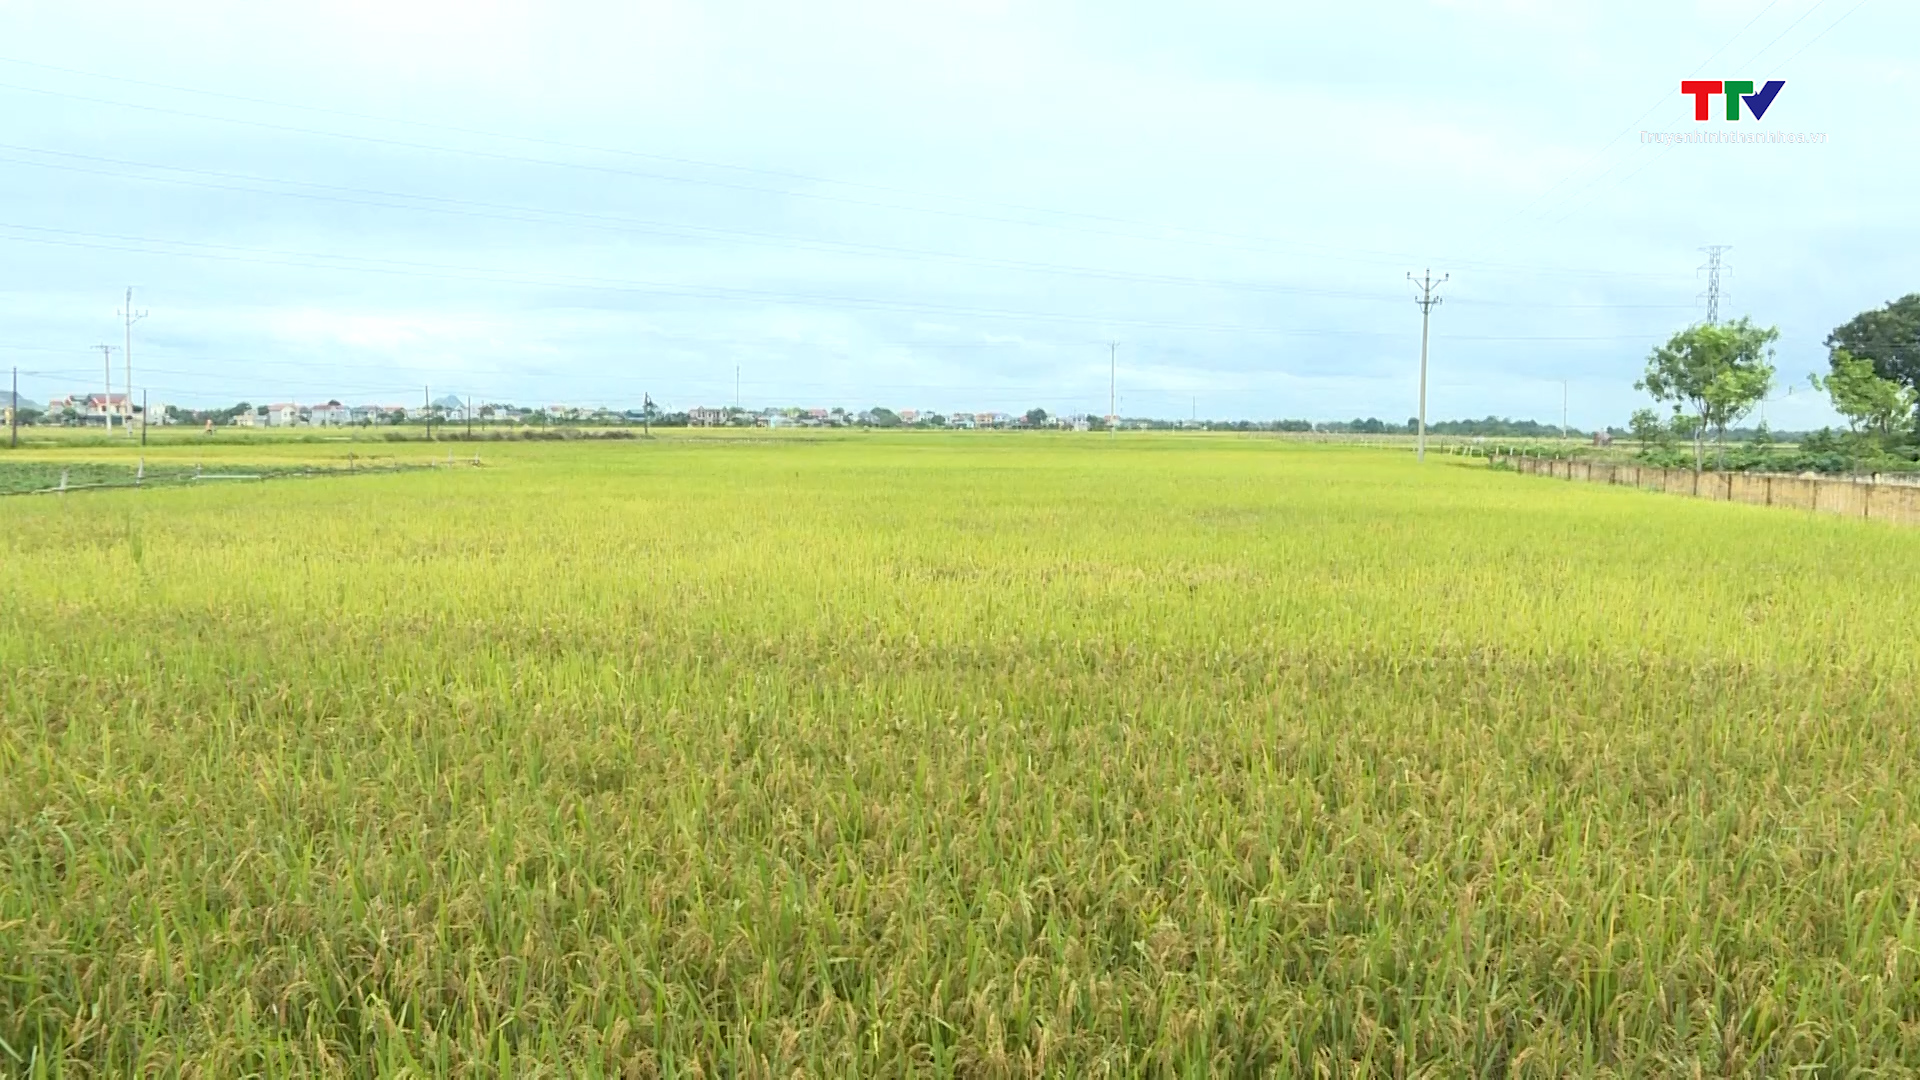 Huyện Thiệu Hóa tích tụ tập trung đất đai tăng gần 30% so với cùng kỳ - Ảnh 2.